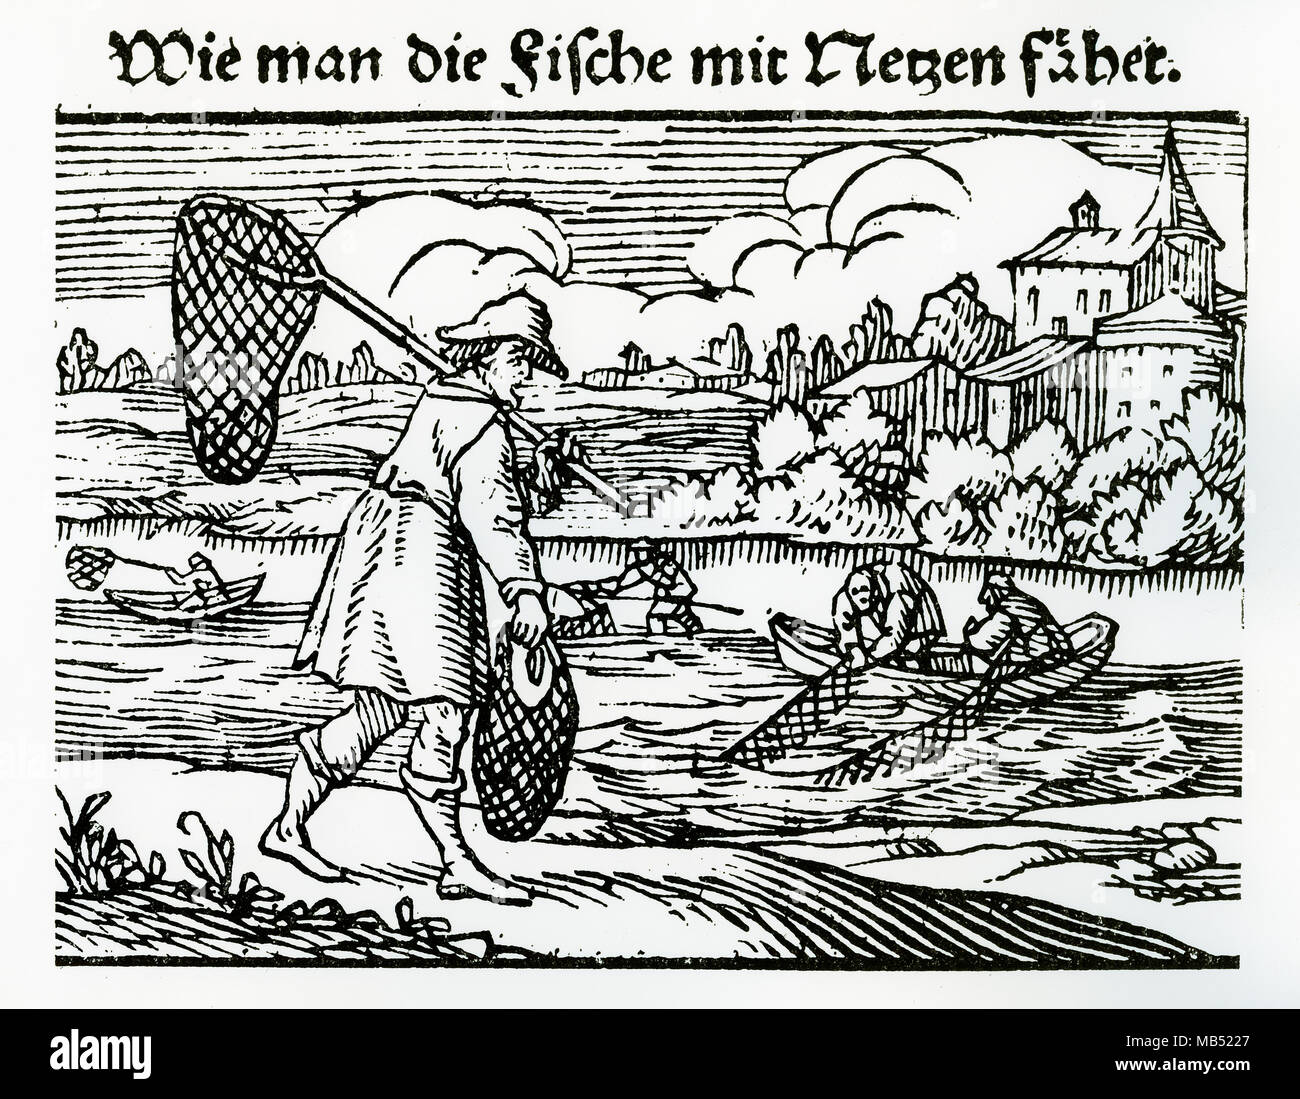 Filet de pêche aux pêcheurs, gravure sur bois, 16e siècle Banque D'Images